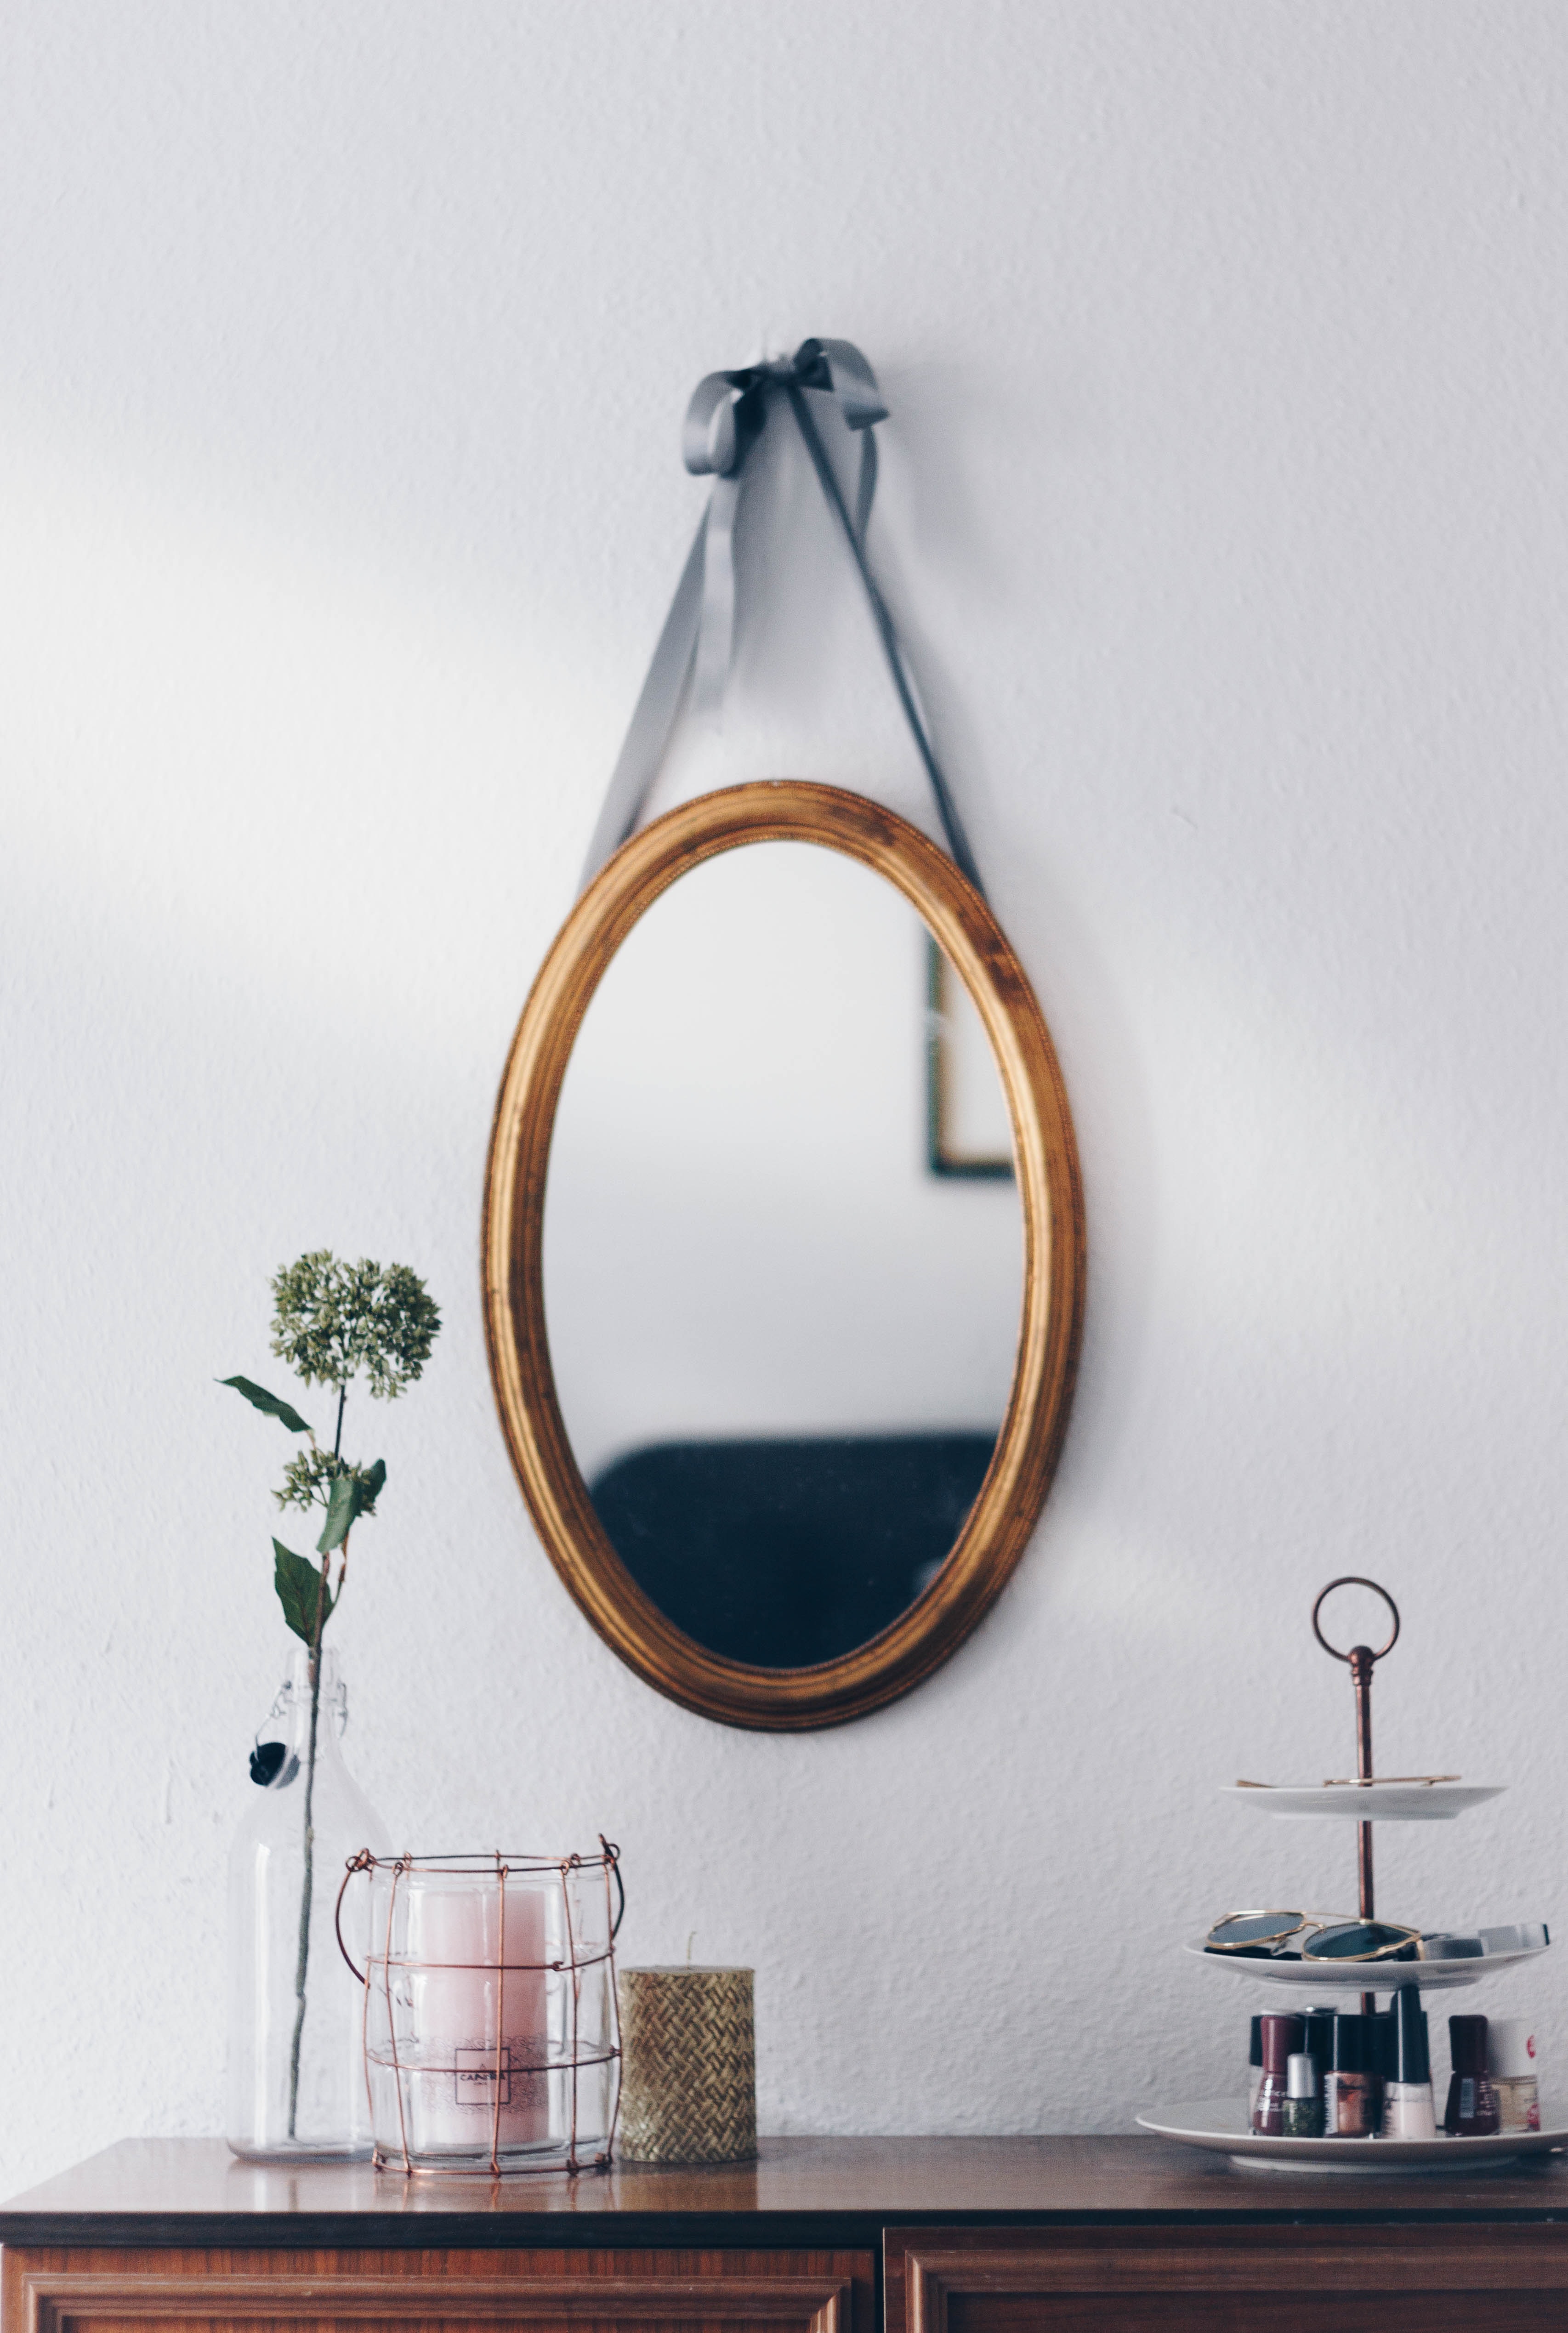 Dale personalidad a tu casa con espejos decorativos - Emotions